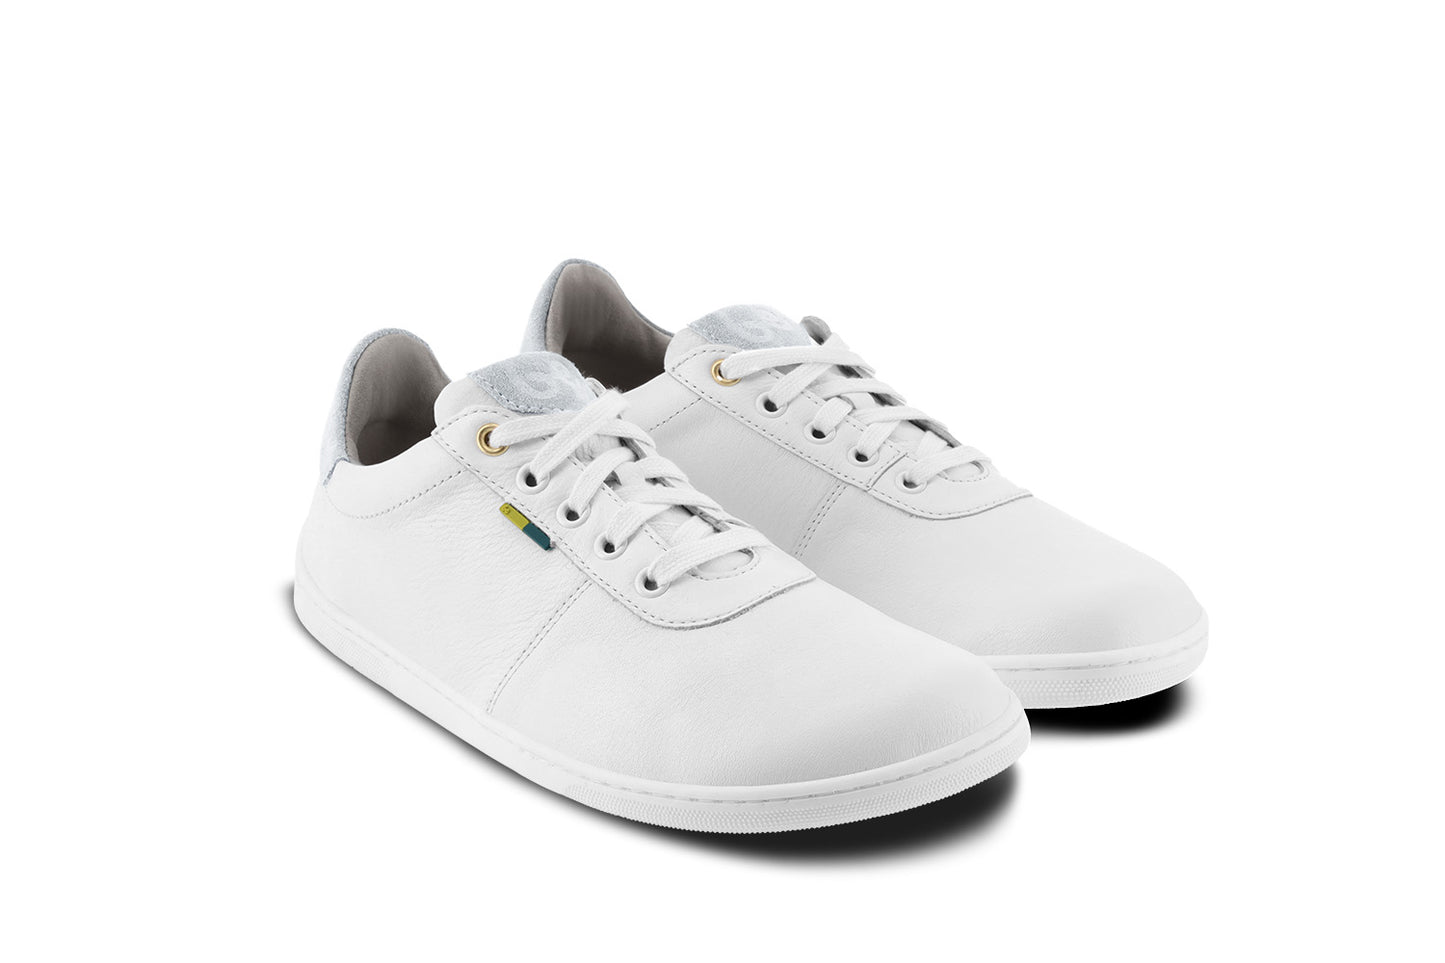 Barefoot Shoes - Be Lenka - Royale - White & Beige 4 OzBarefoot Australia